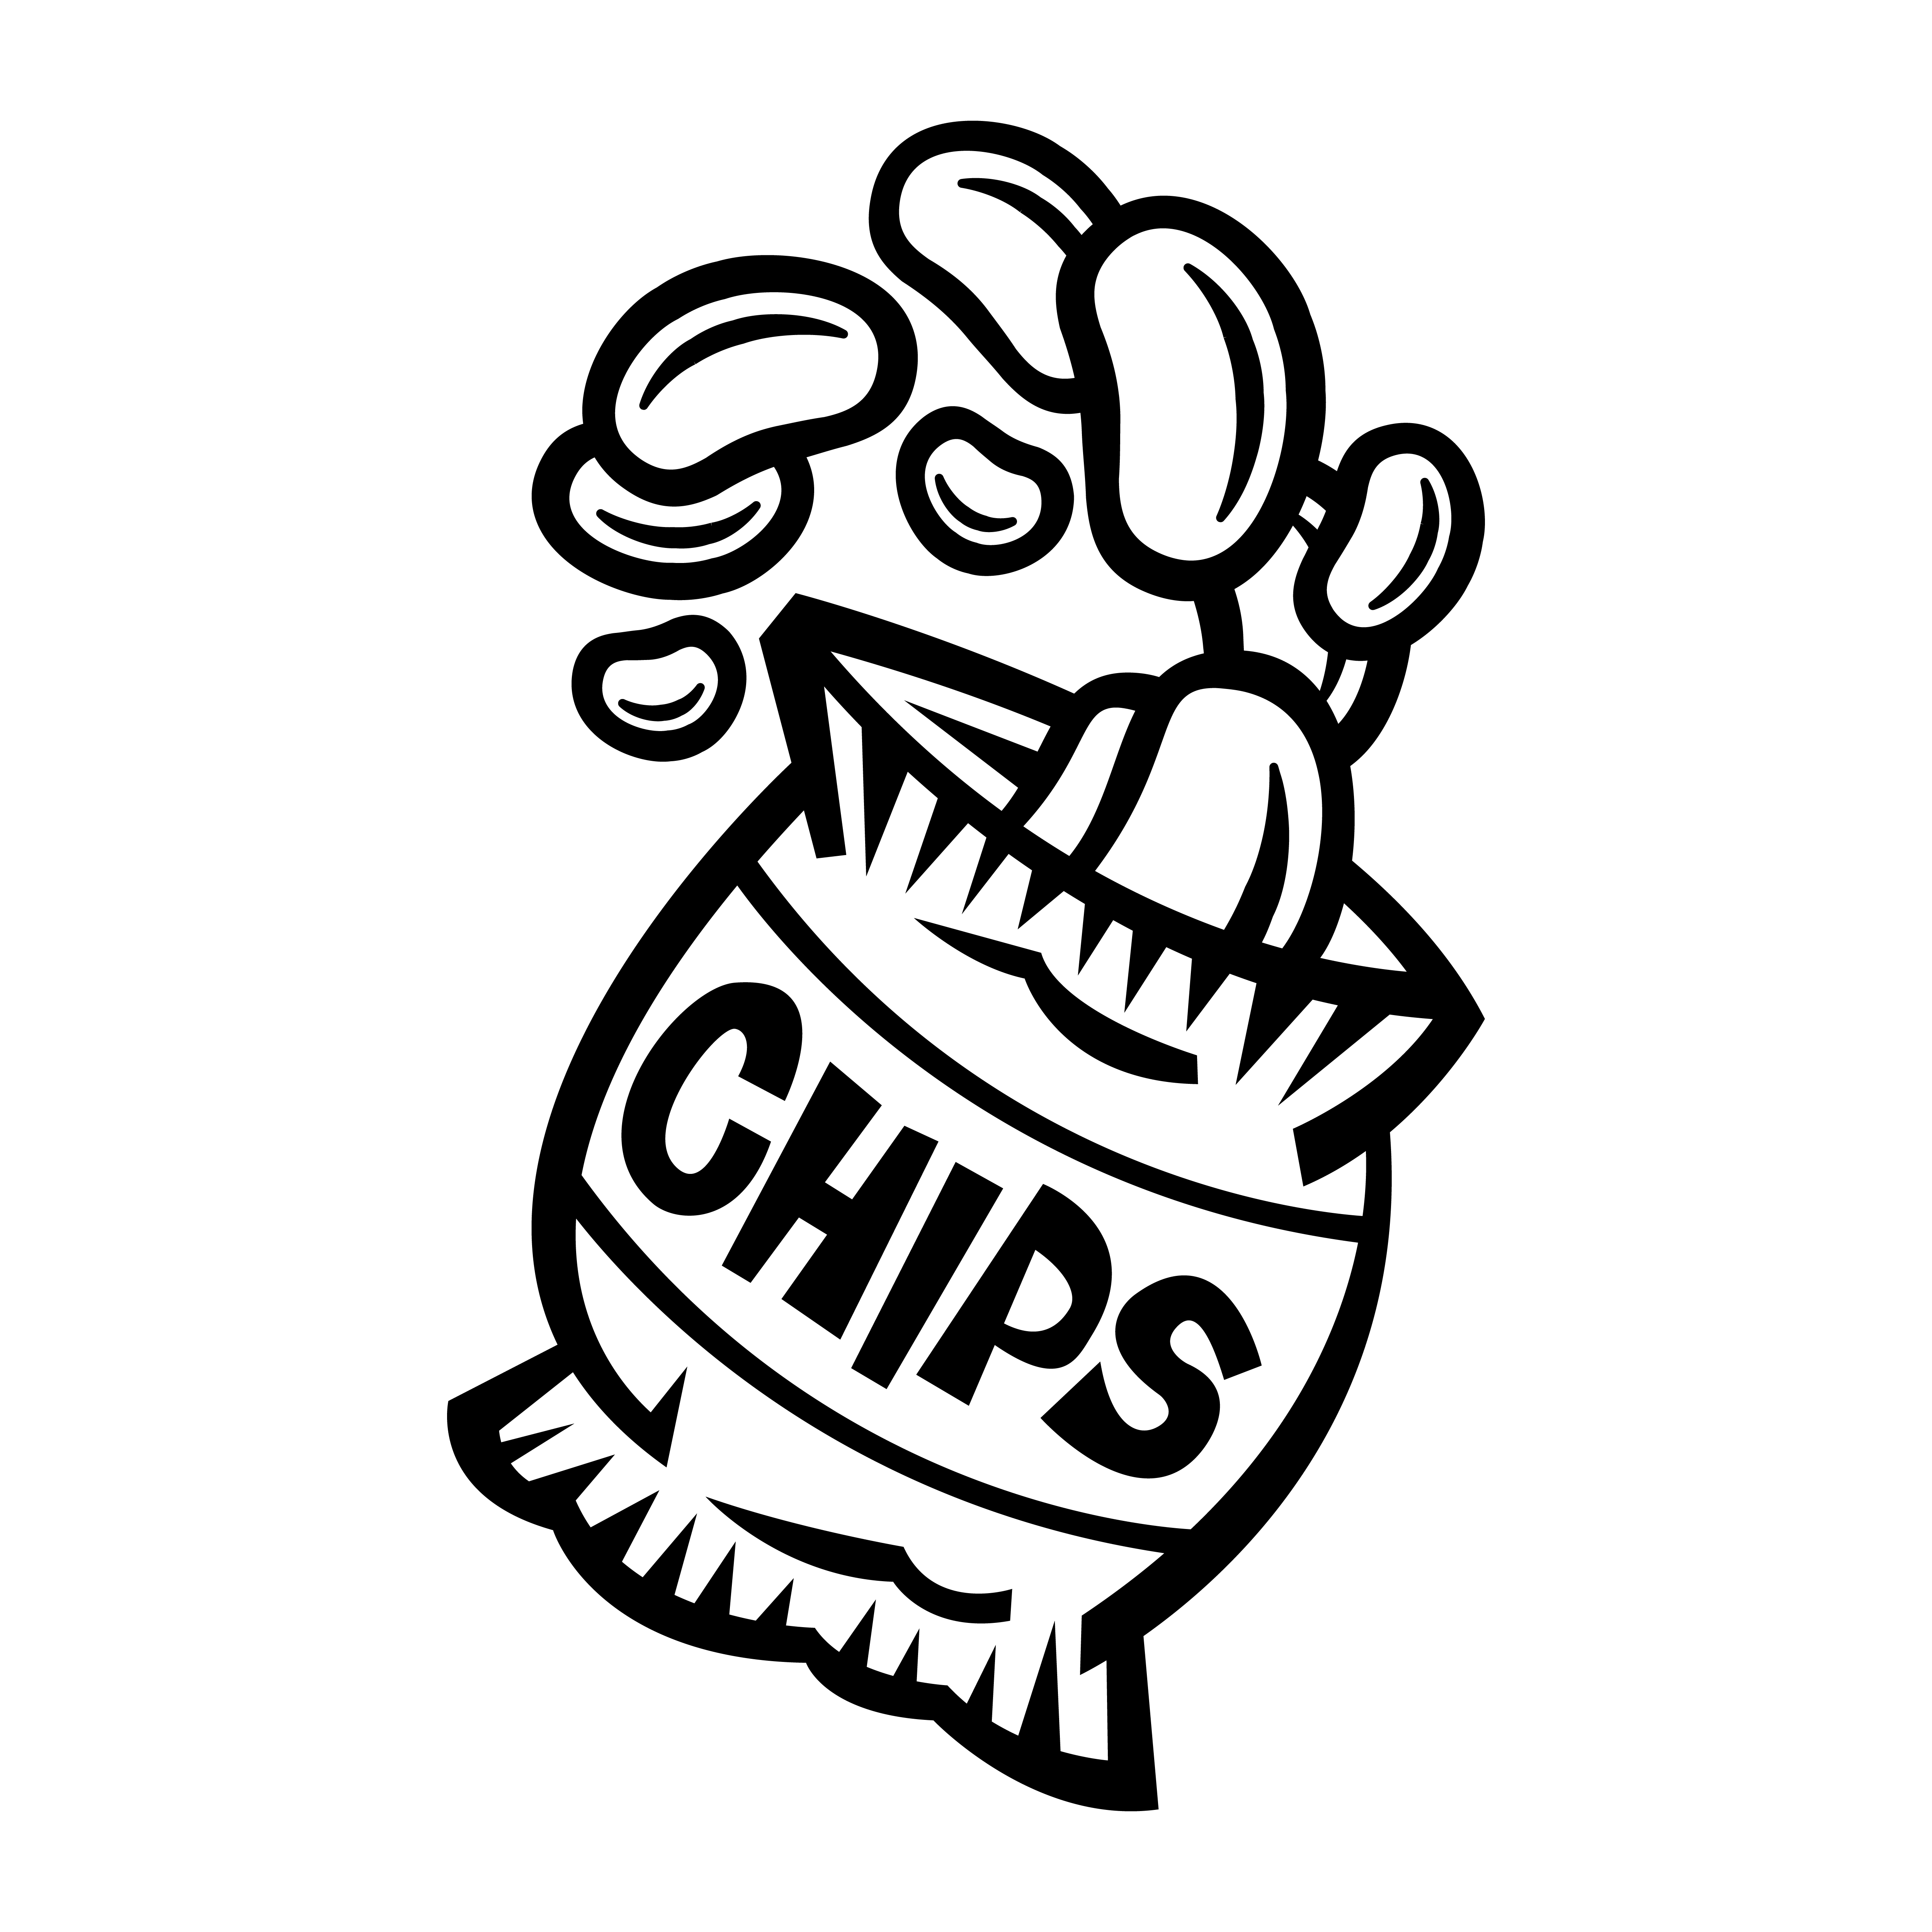 Potato Chip Bag Clipart Black And White